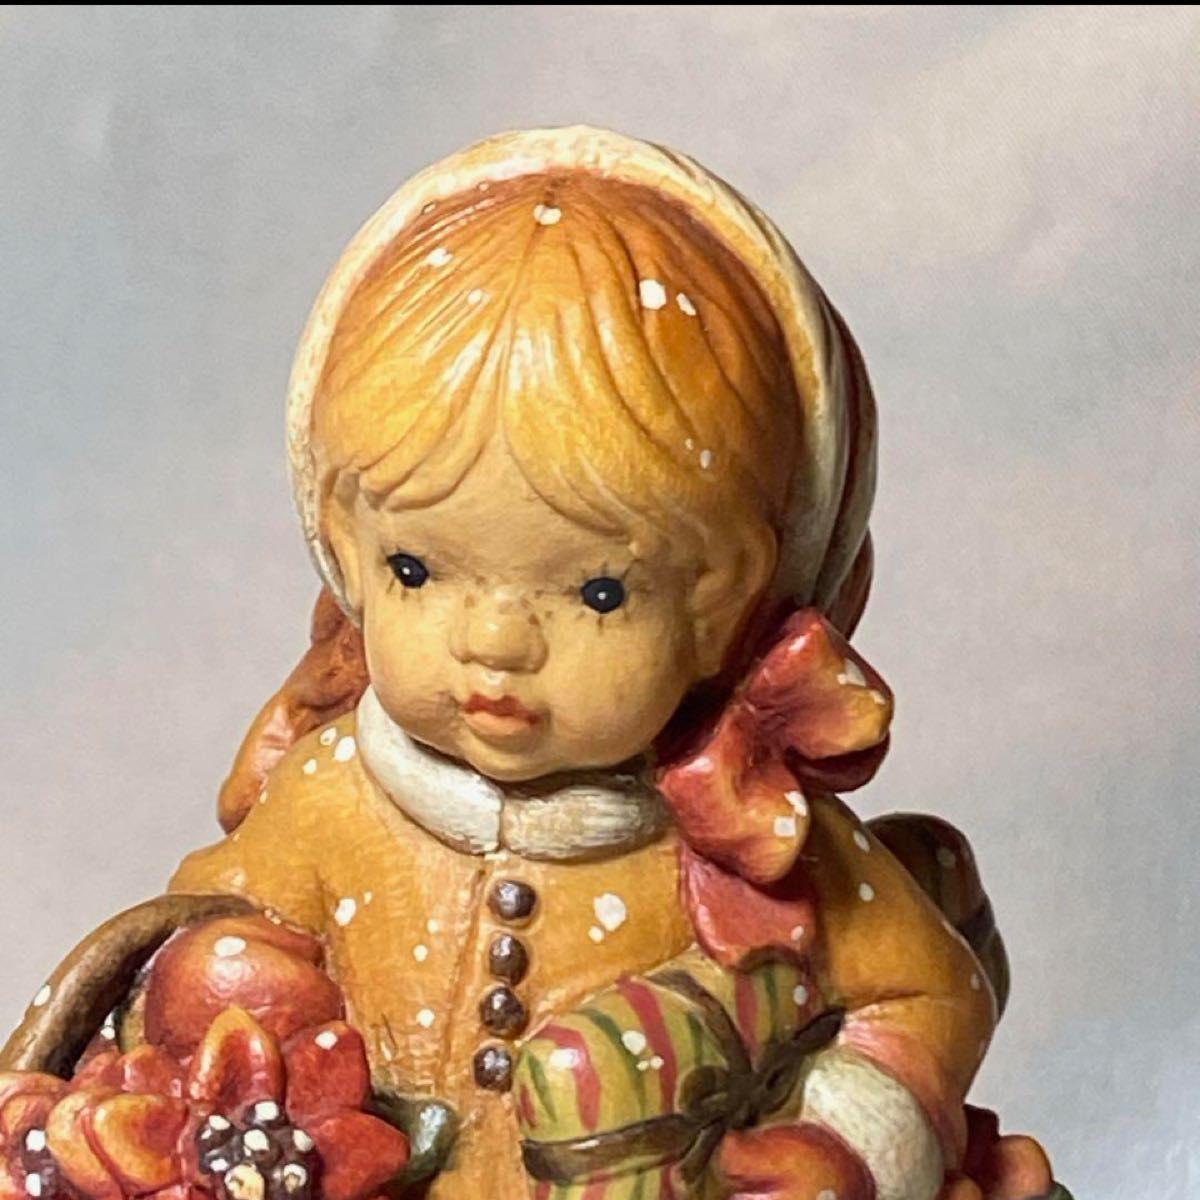 超激レア　アンリ木彫り人形  サラ・ケイ　リュージュオルゴール　4000体限定 置物 木彫り アンリ人形